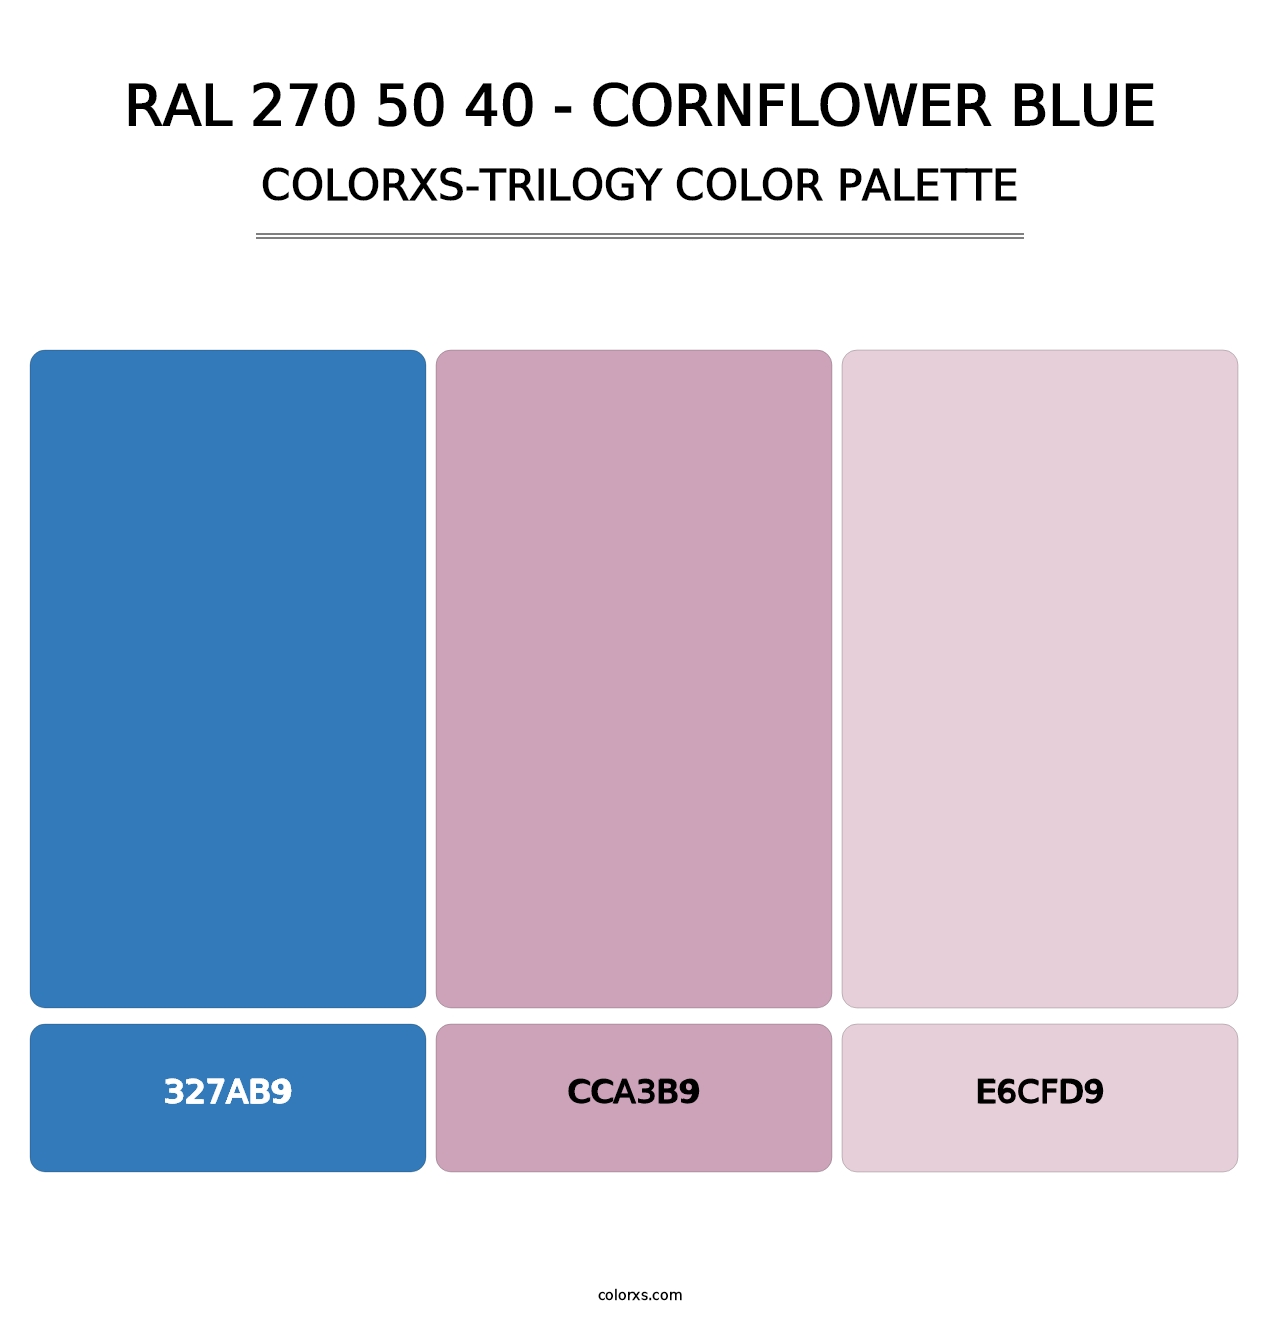 RAL 270 50 40 - Cornflower Blue - Colorxs Trilogy Palette